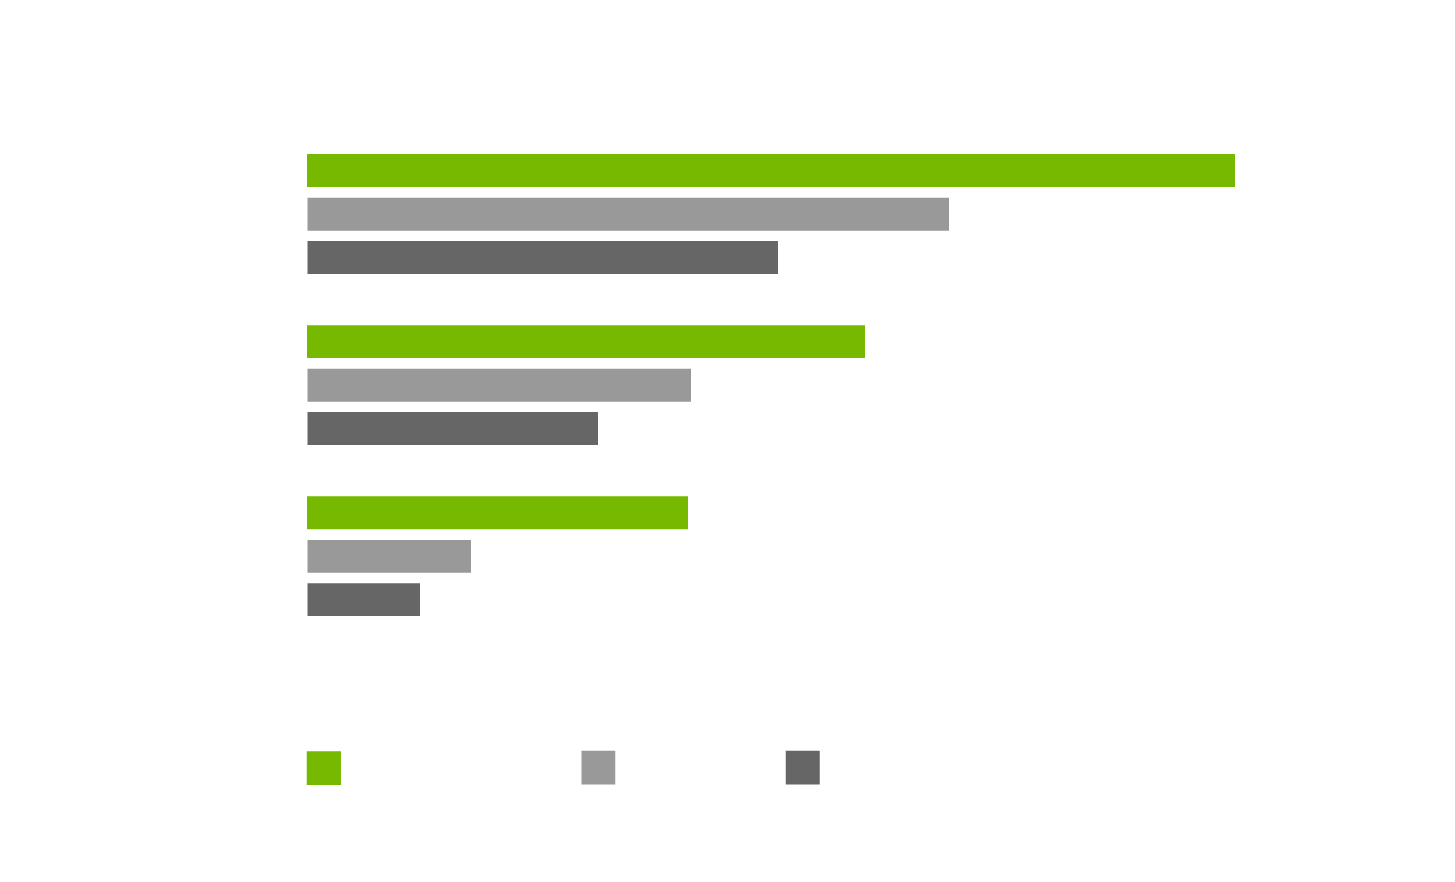 Gráfica GEFORCE® RTX 2060 Super™